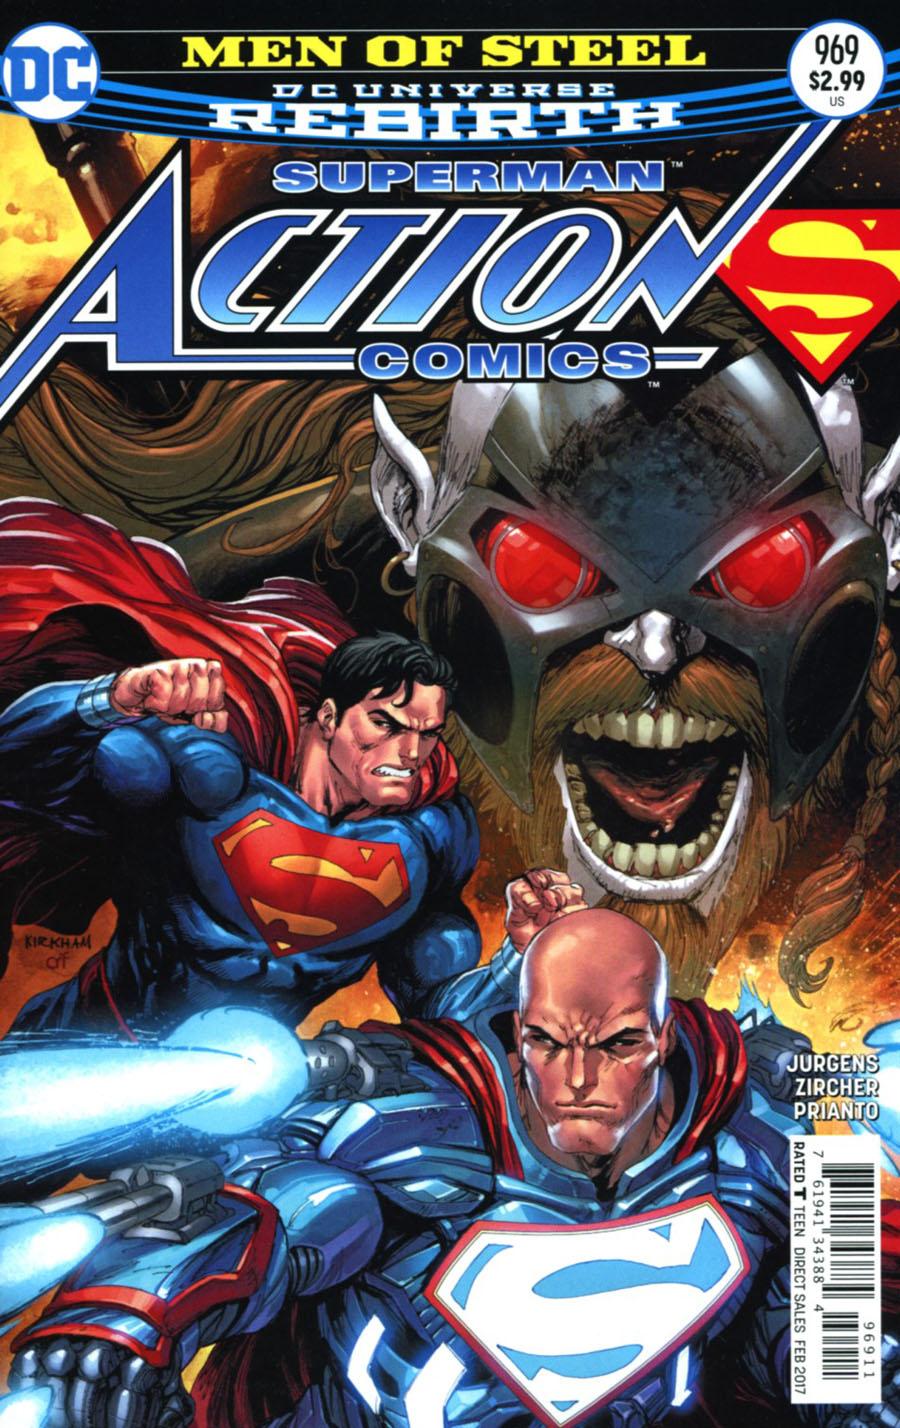 Action Comics Vol. 2 #969